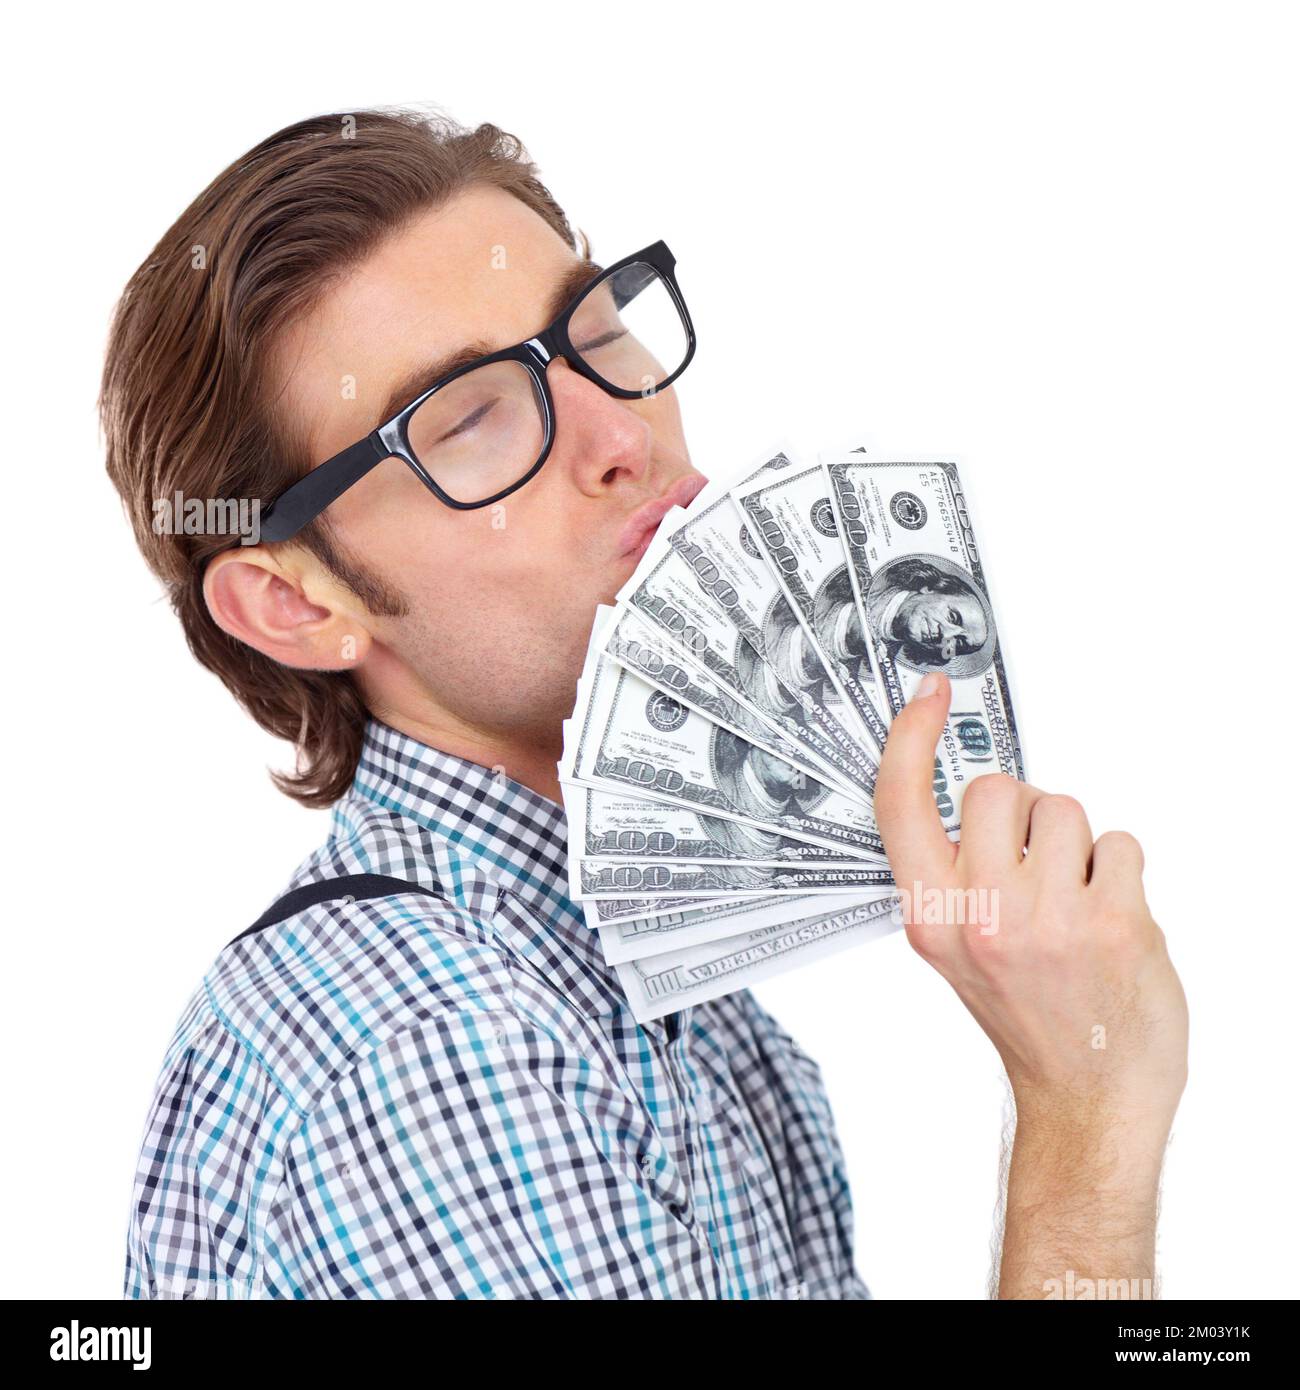 Fare soldi è la sua passione. Un giovane che bacia una bacchetta di denaro. Foto Stock